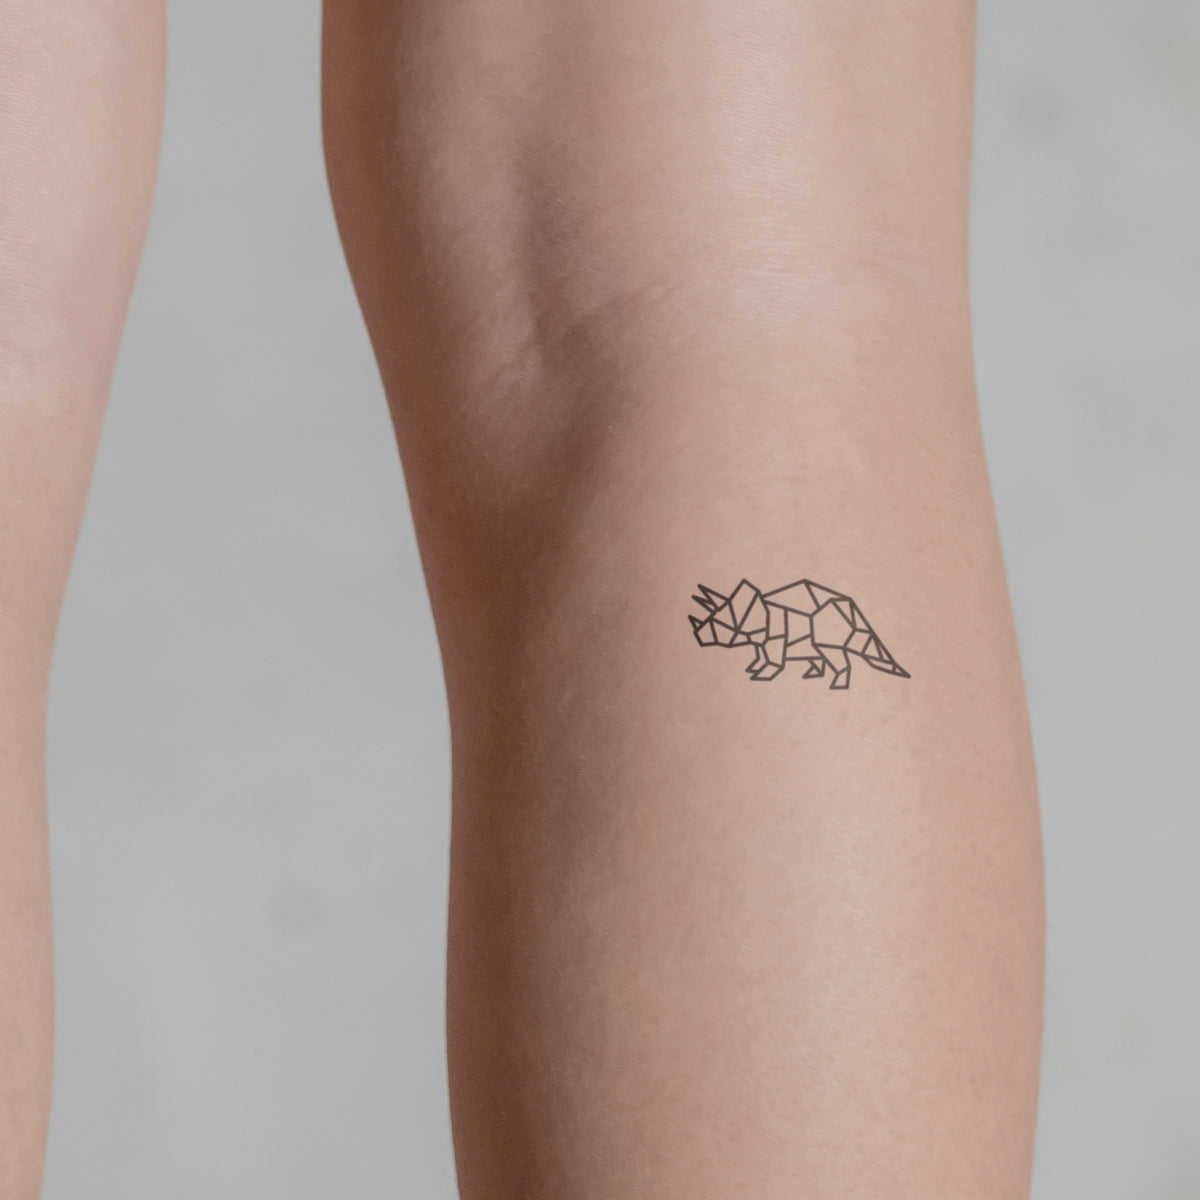 Geometrischer Triceratops Tattoo von minink, der Marke für temporäre Tattoos.